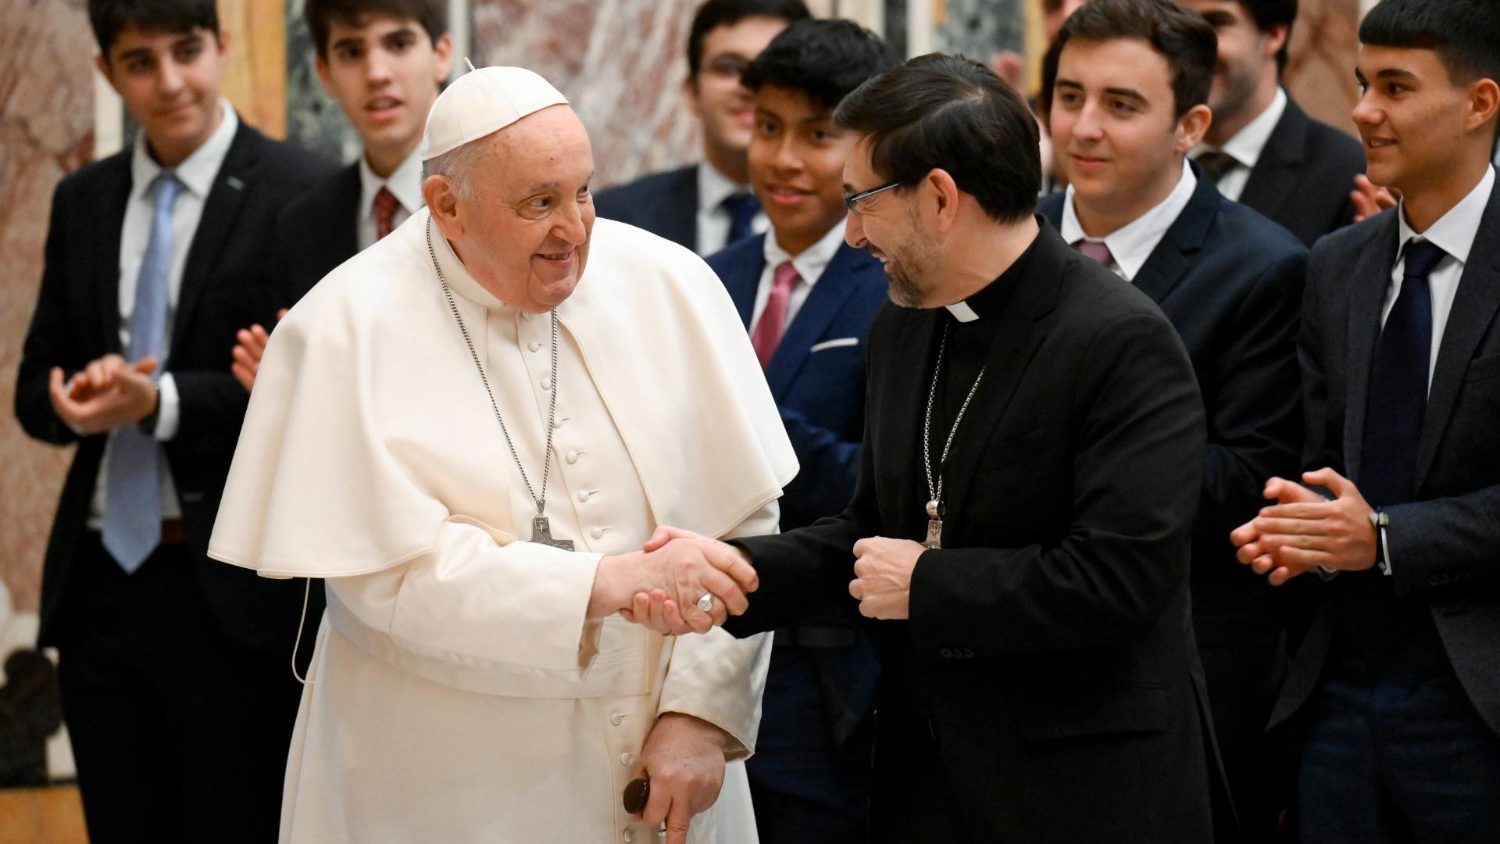 El Papa a los seminaristas de Madrid: Libérese de las falsas ideas mundanas y ponga a Dios en el centro